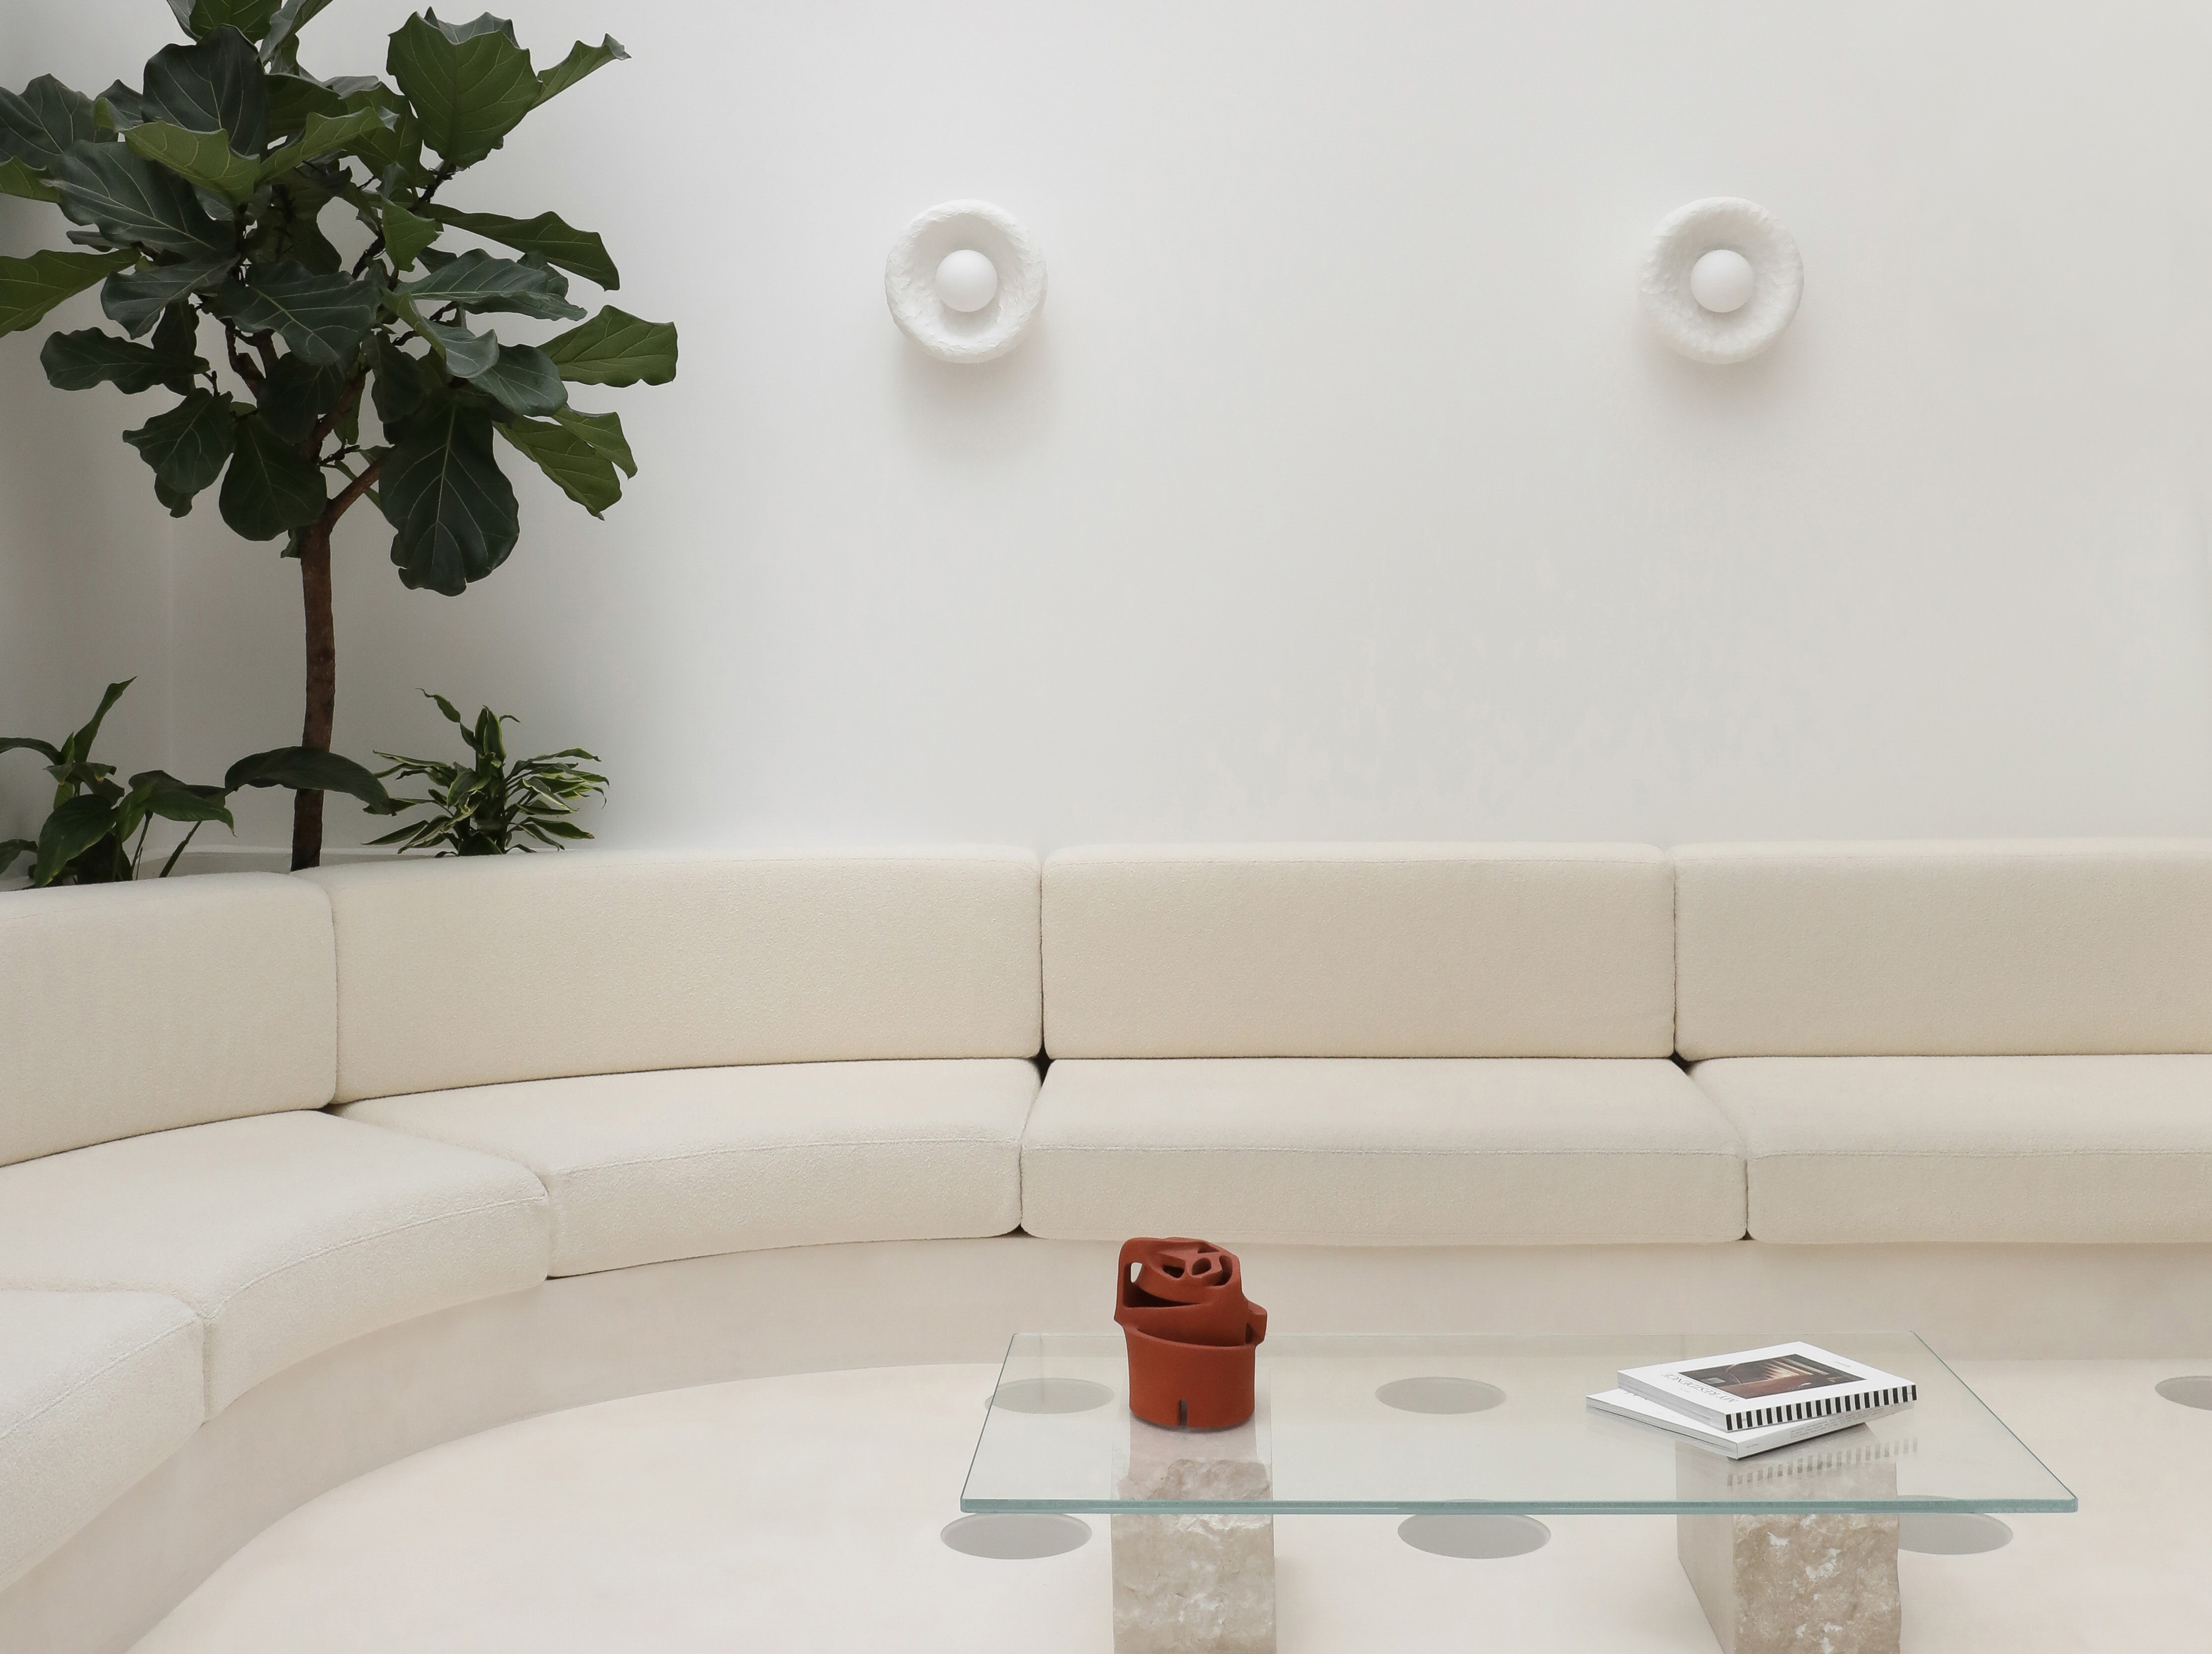 Minimalist living room ideas – 15 inspiring pared-back looks